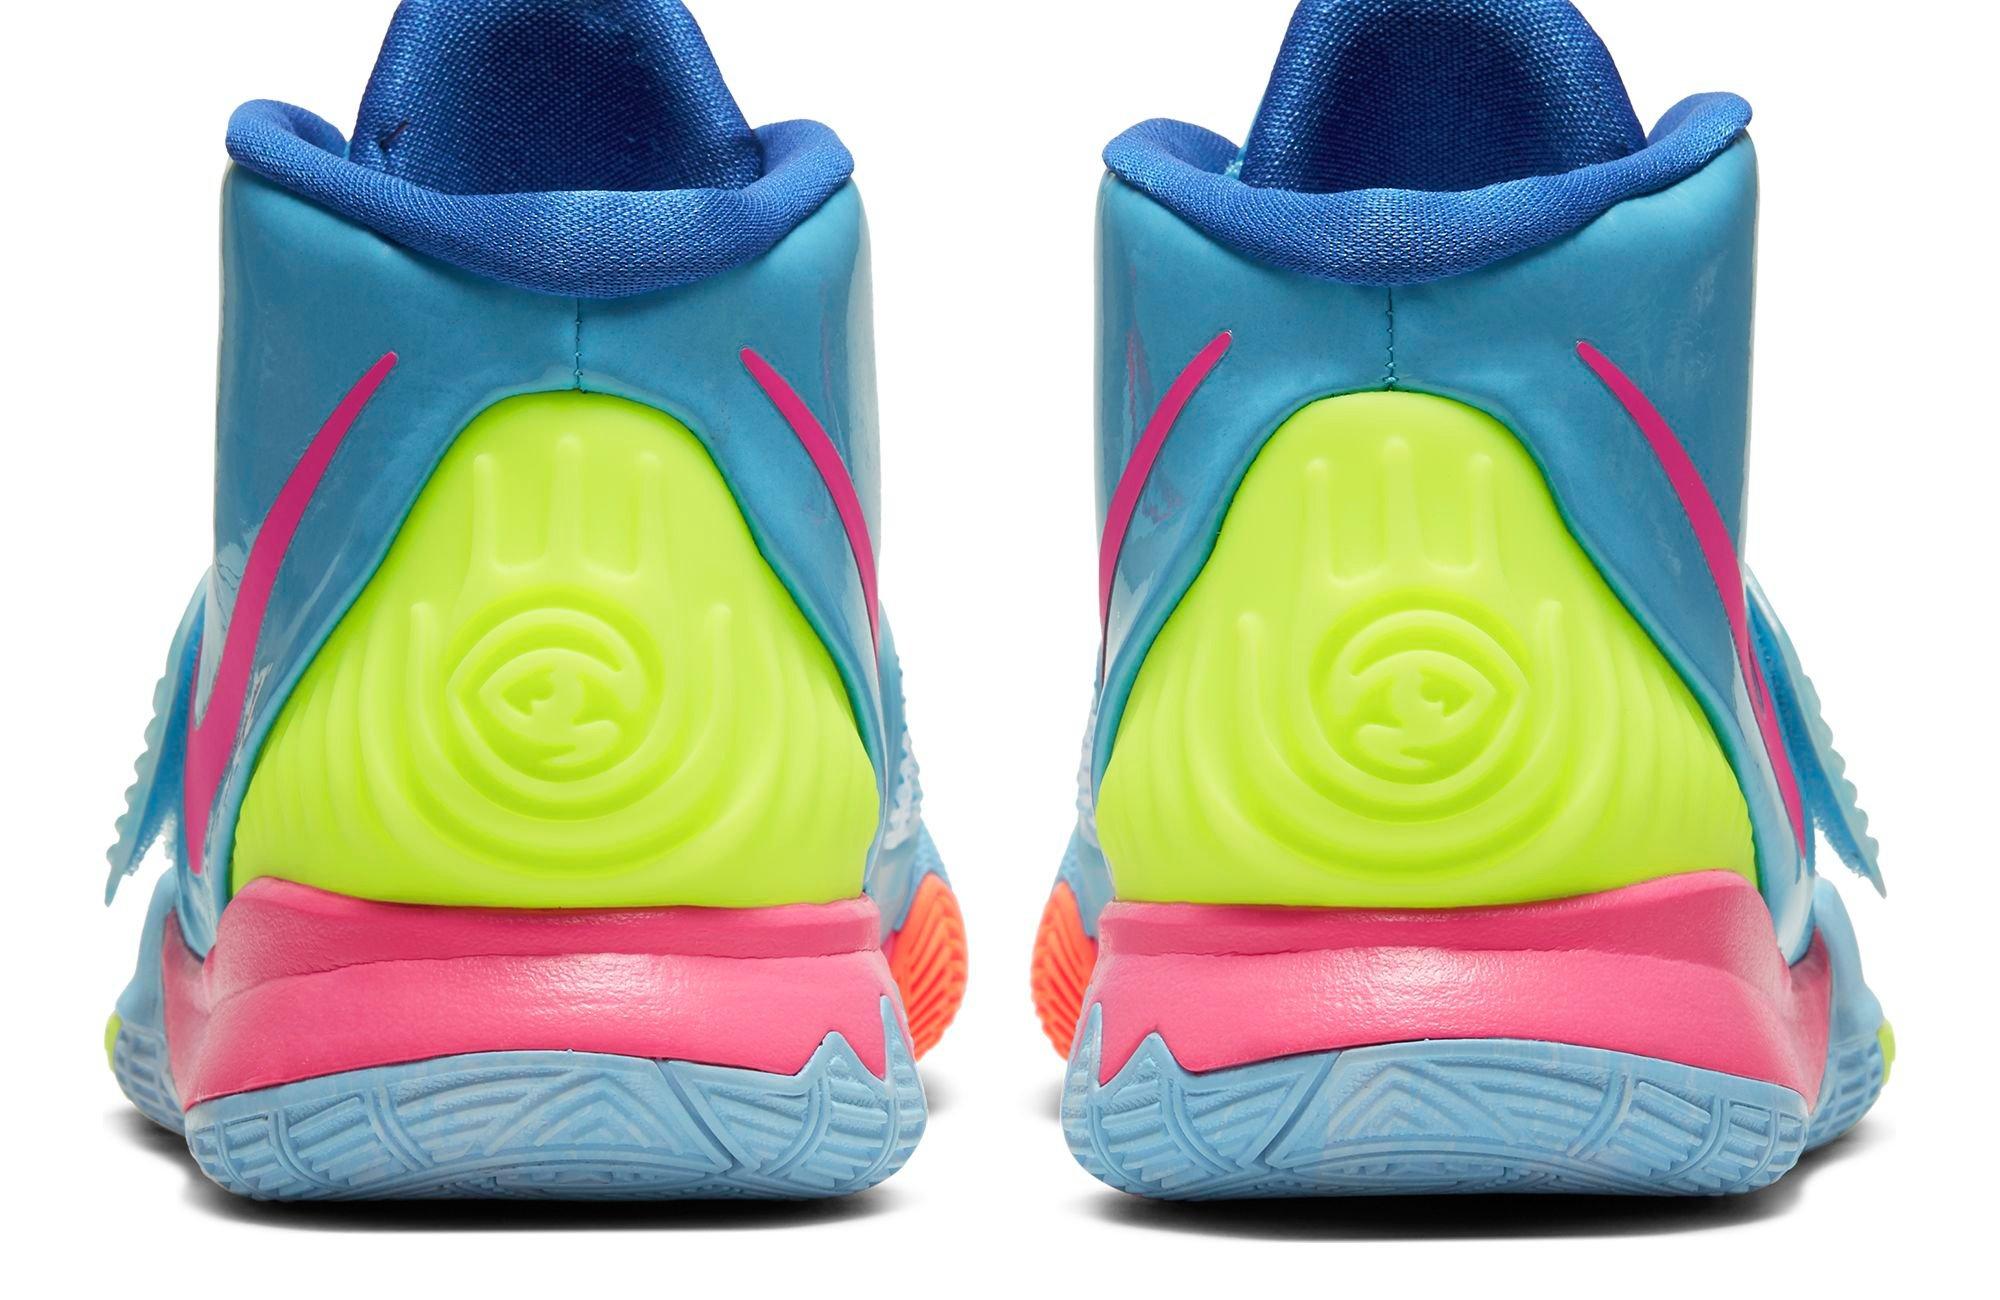 Sneakers Release – Nike Kyrie 6 “Pool” Grade School Kids’ Basketball Shoe